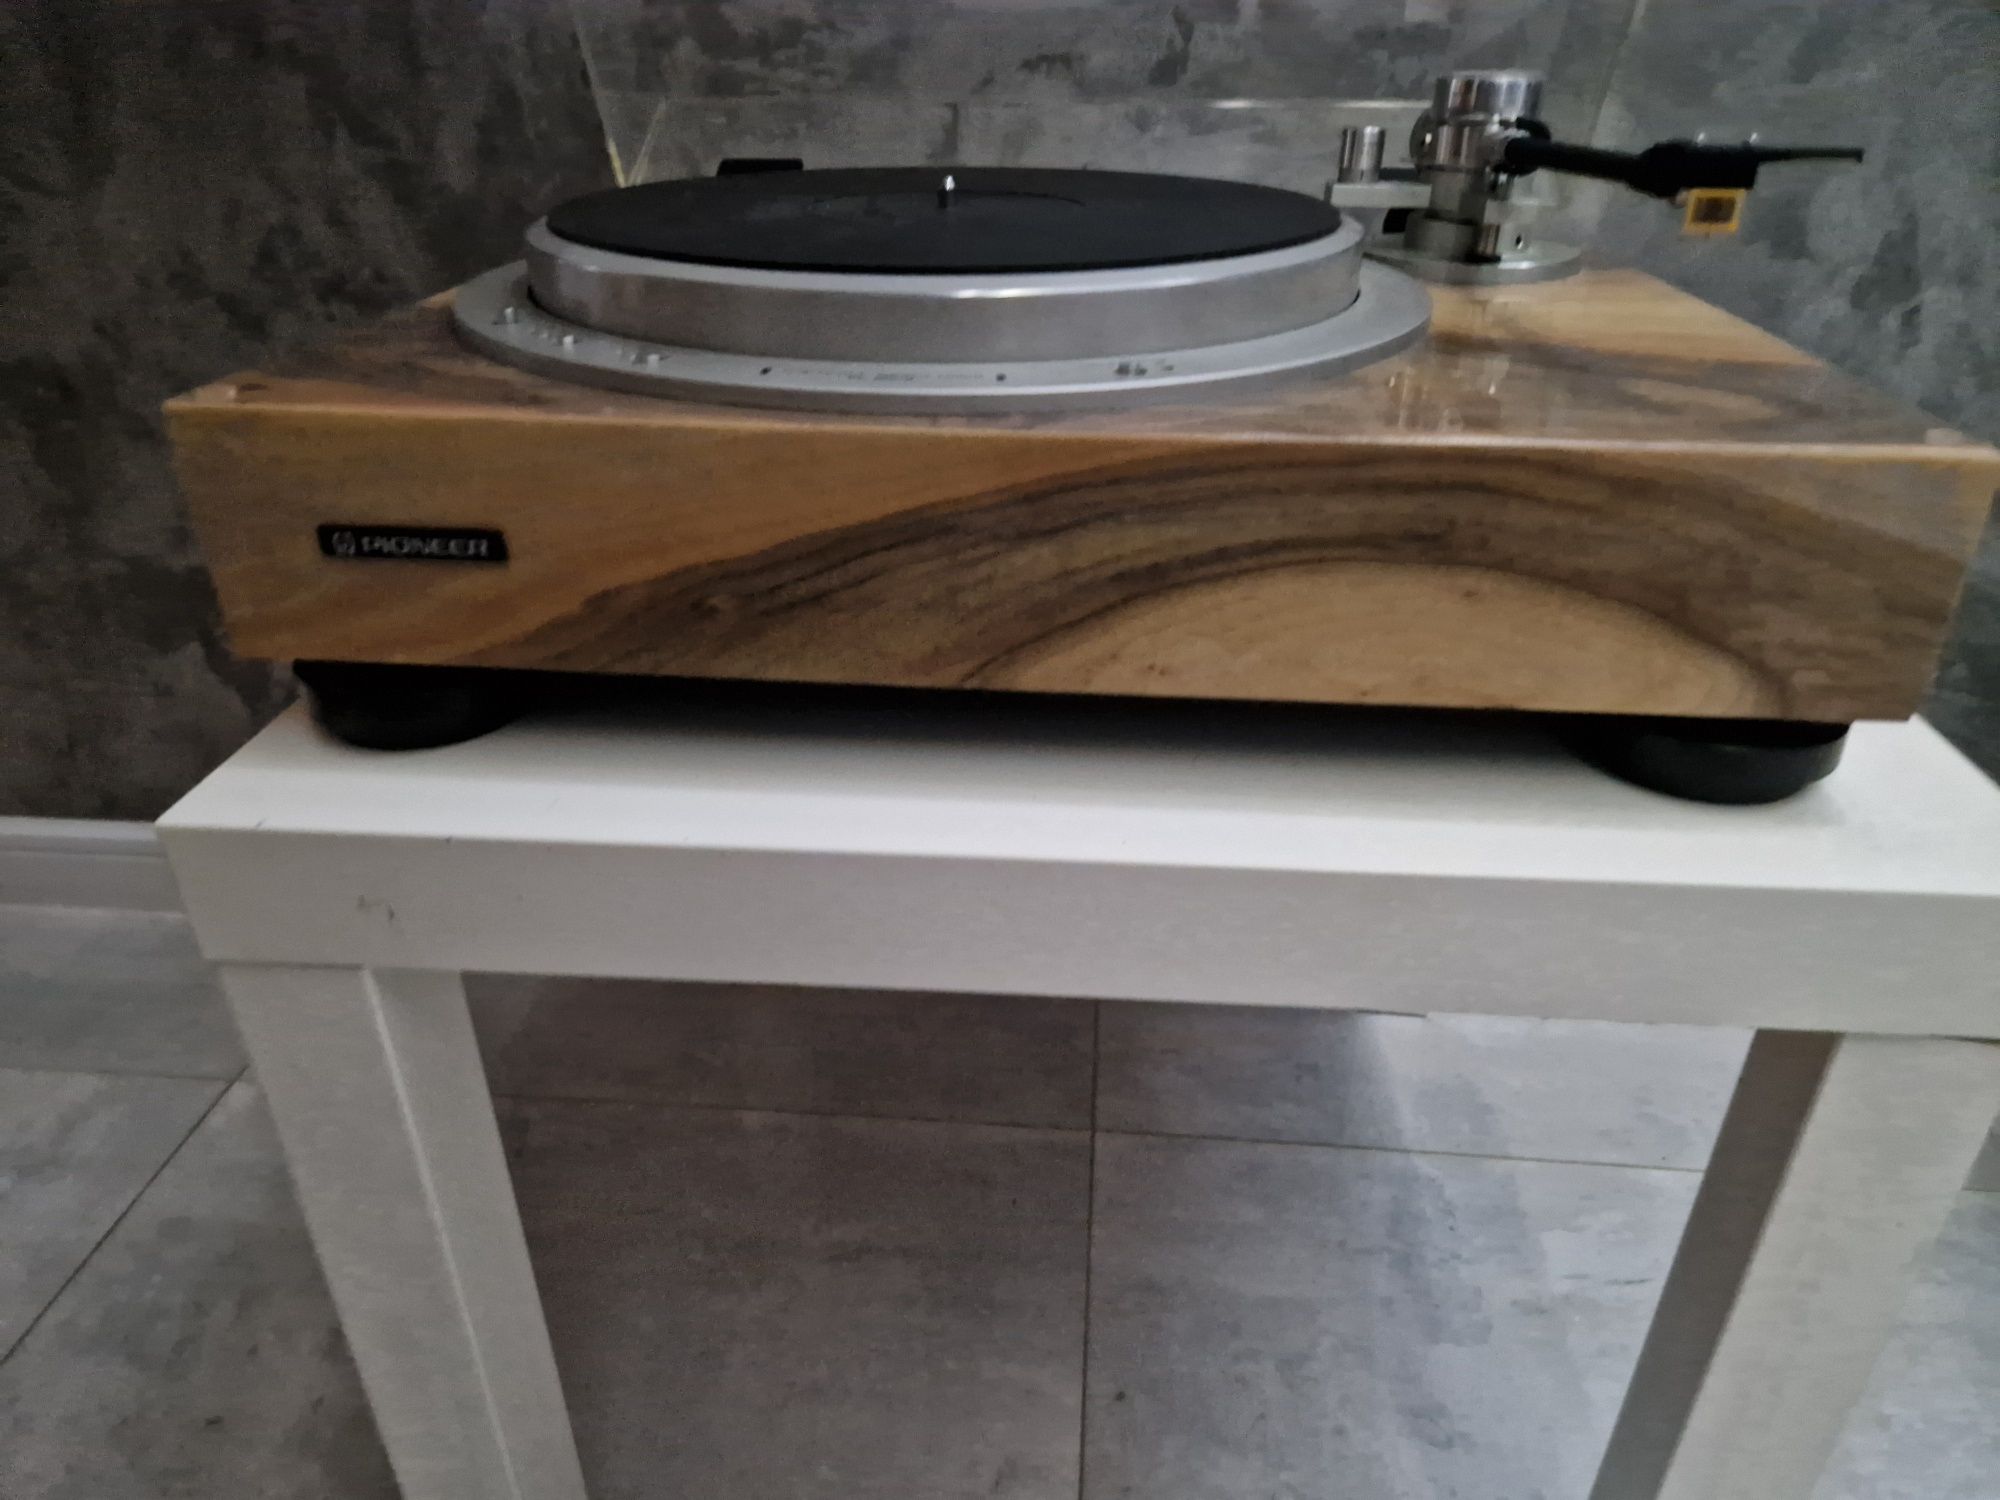 Gramofon pioneer PL 50ll w pìęknym drewnianym naturalnym fornirze